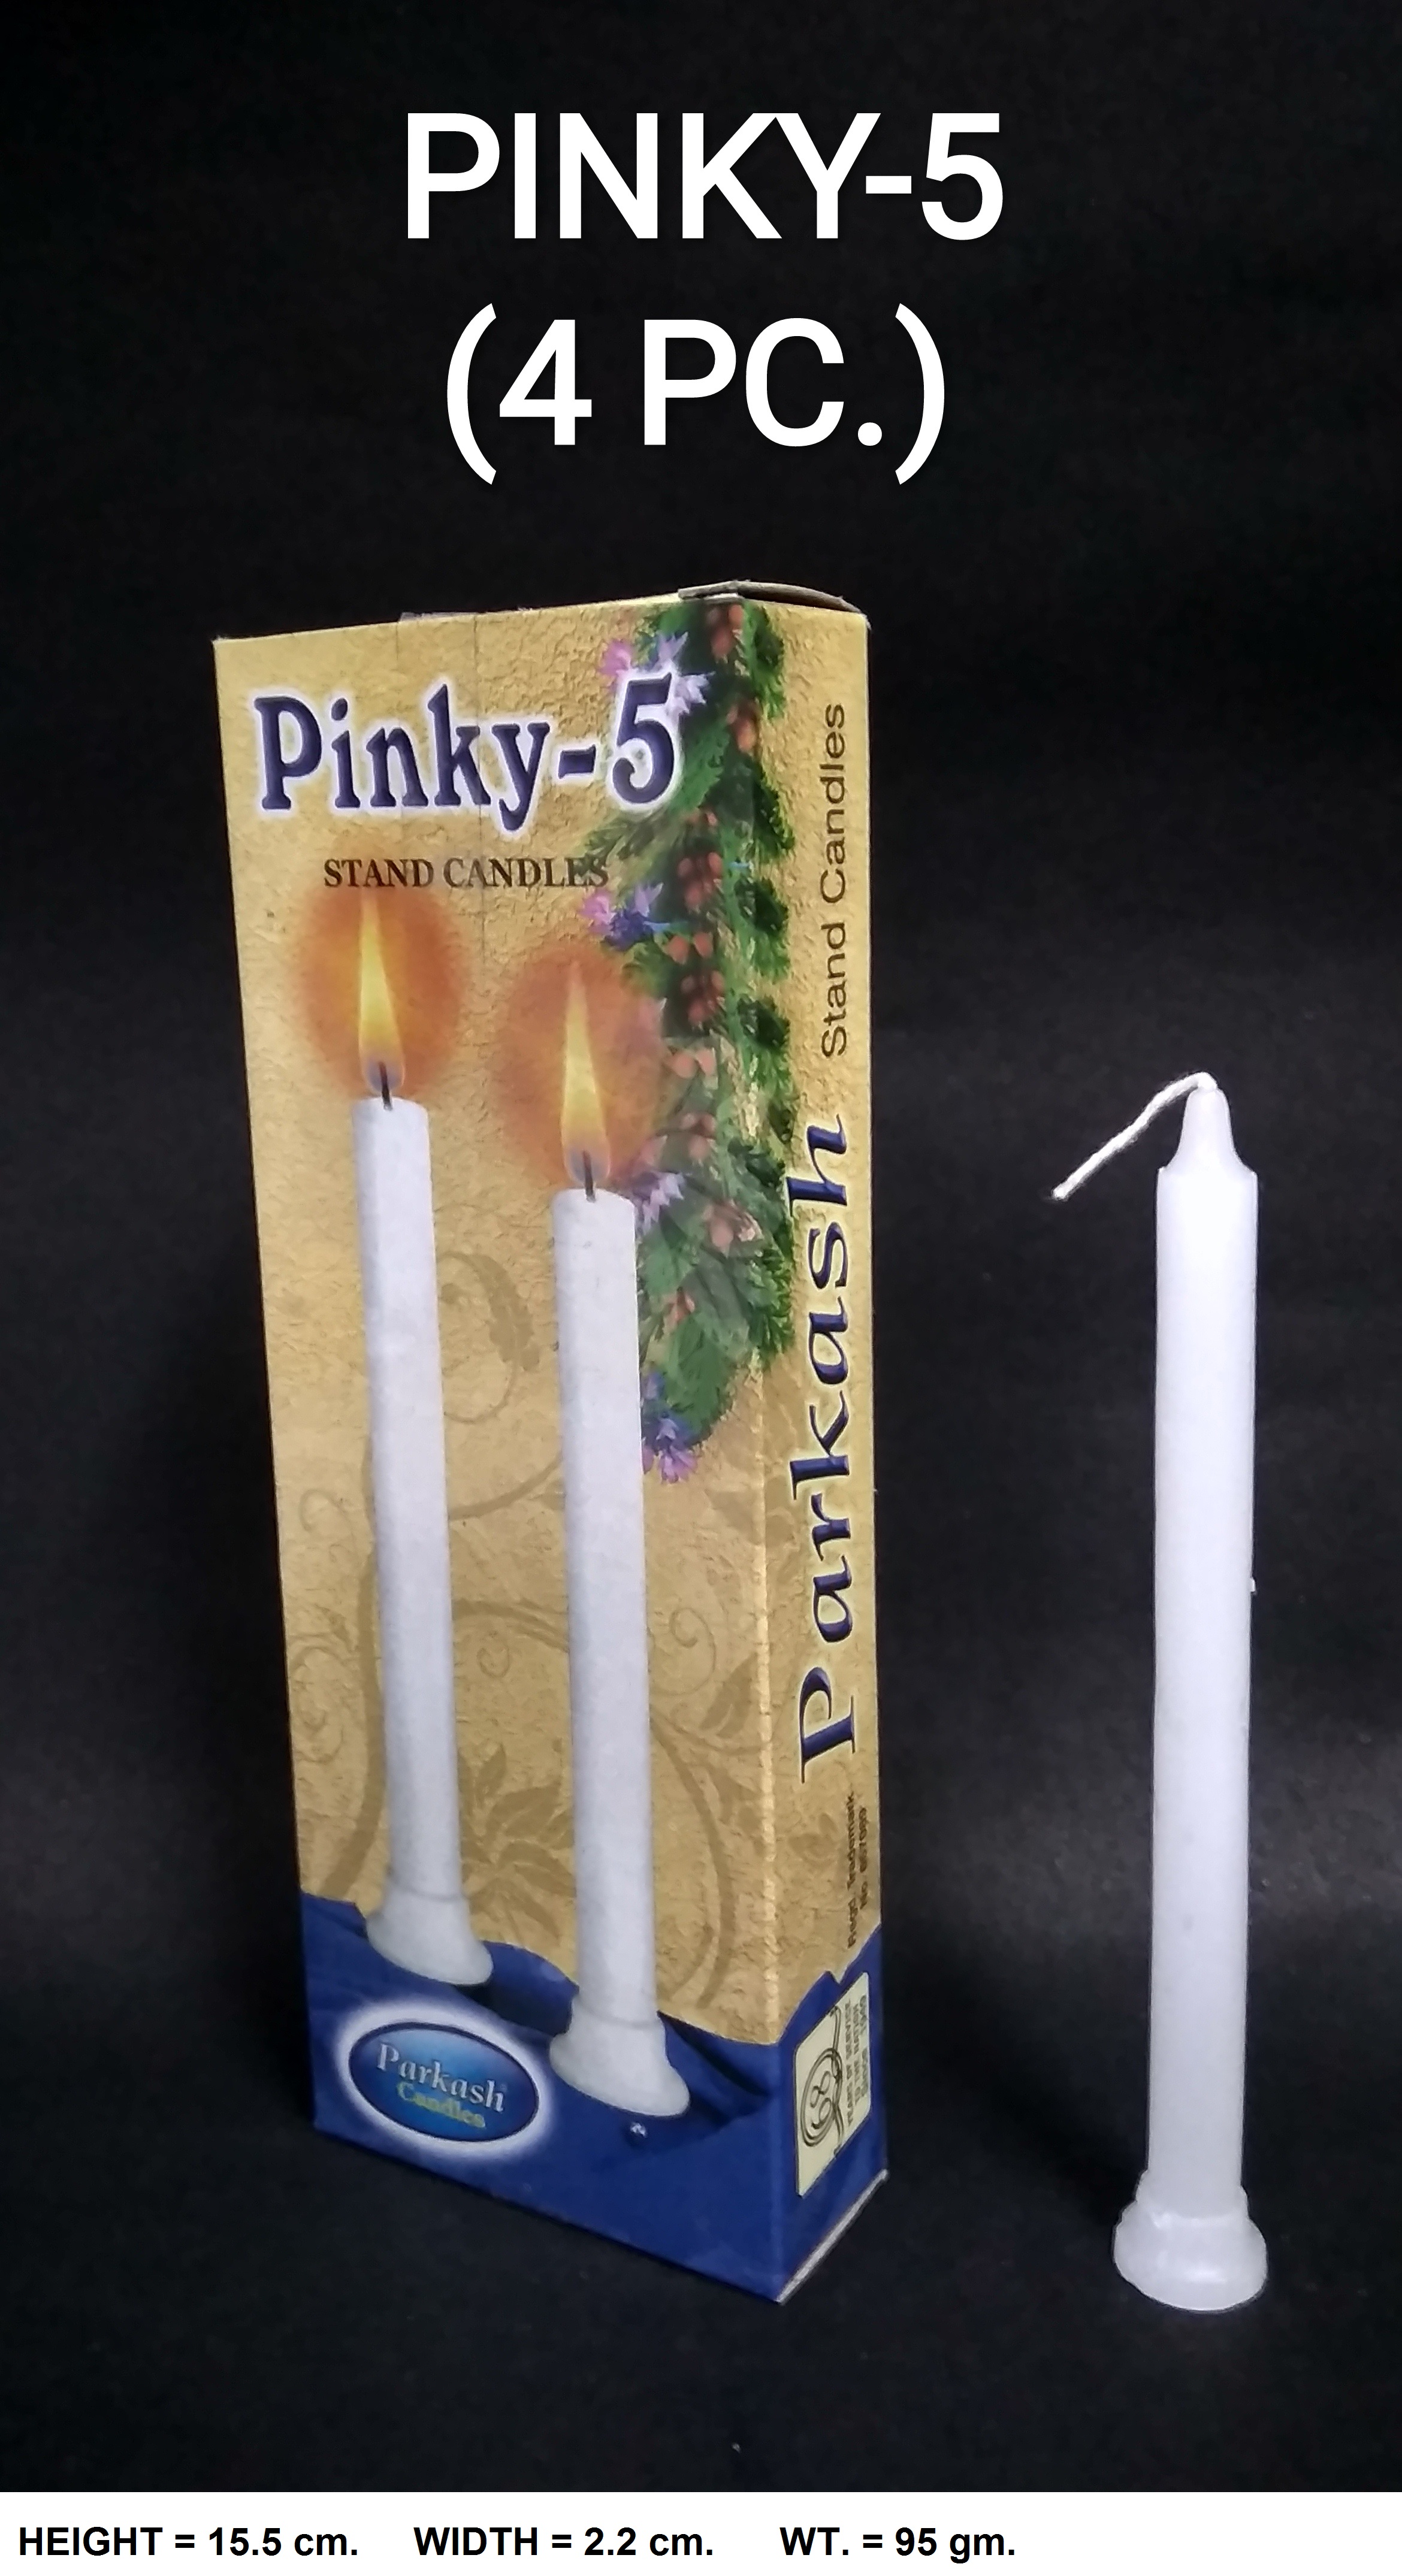 PINKY-5